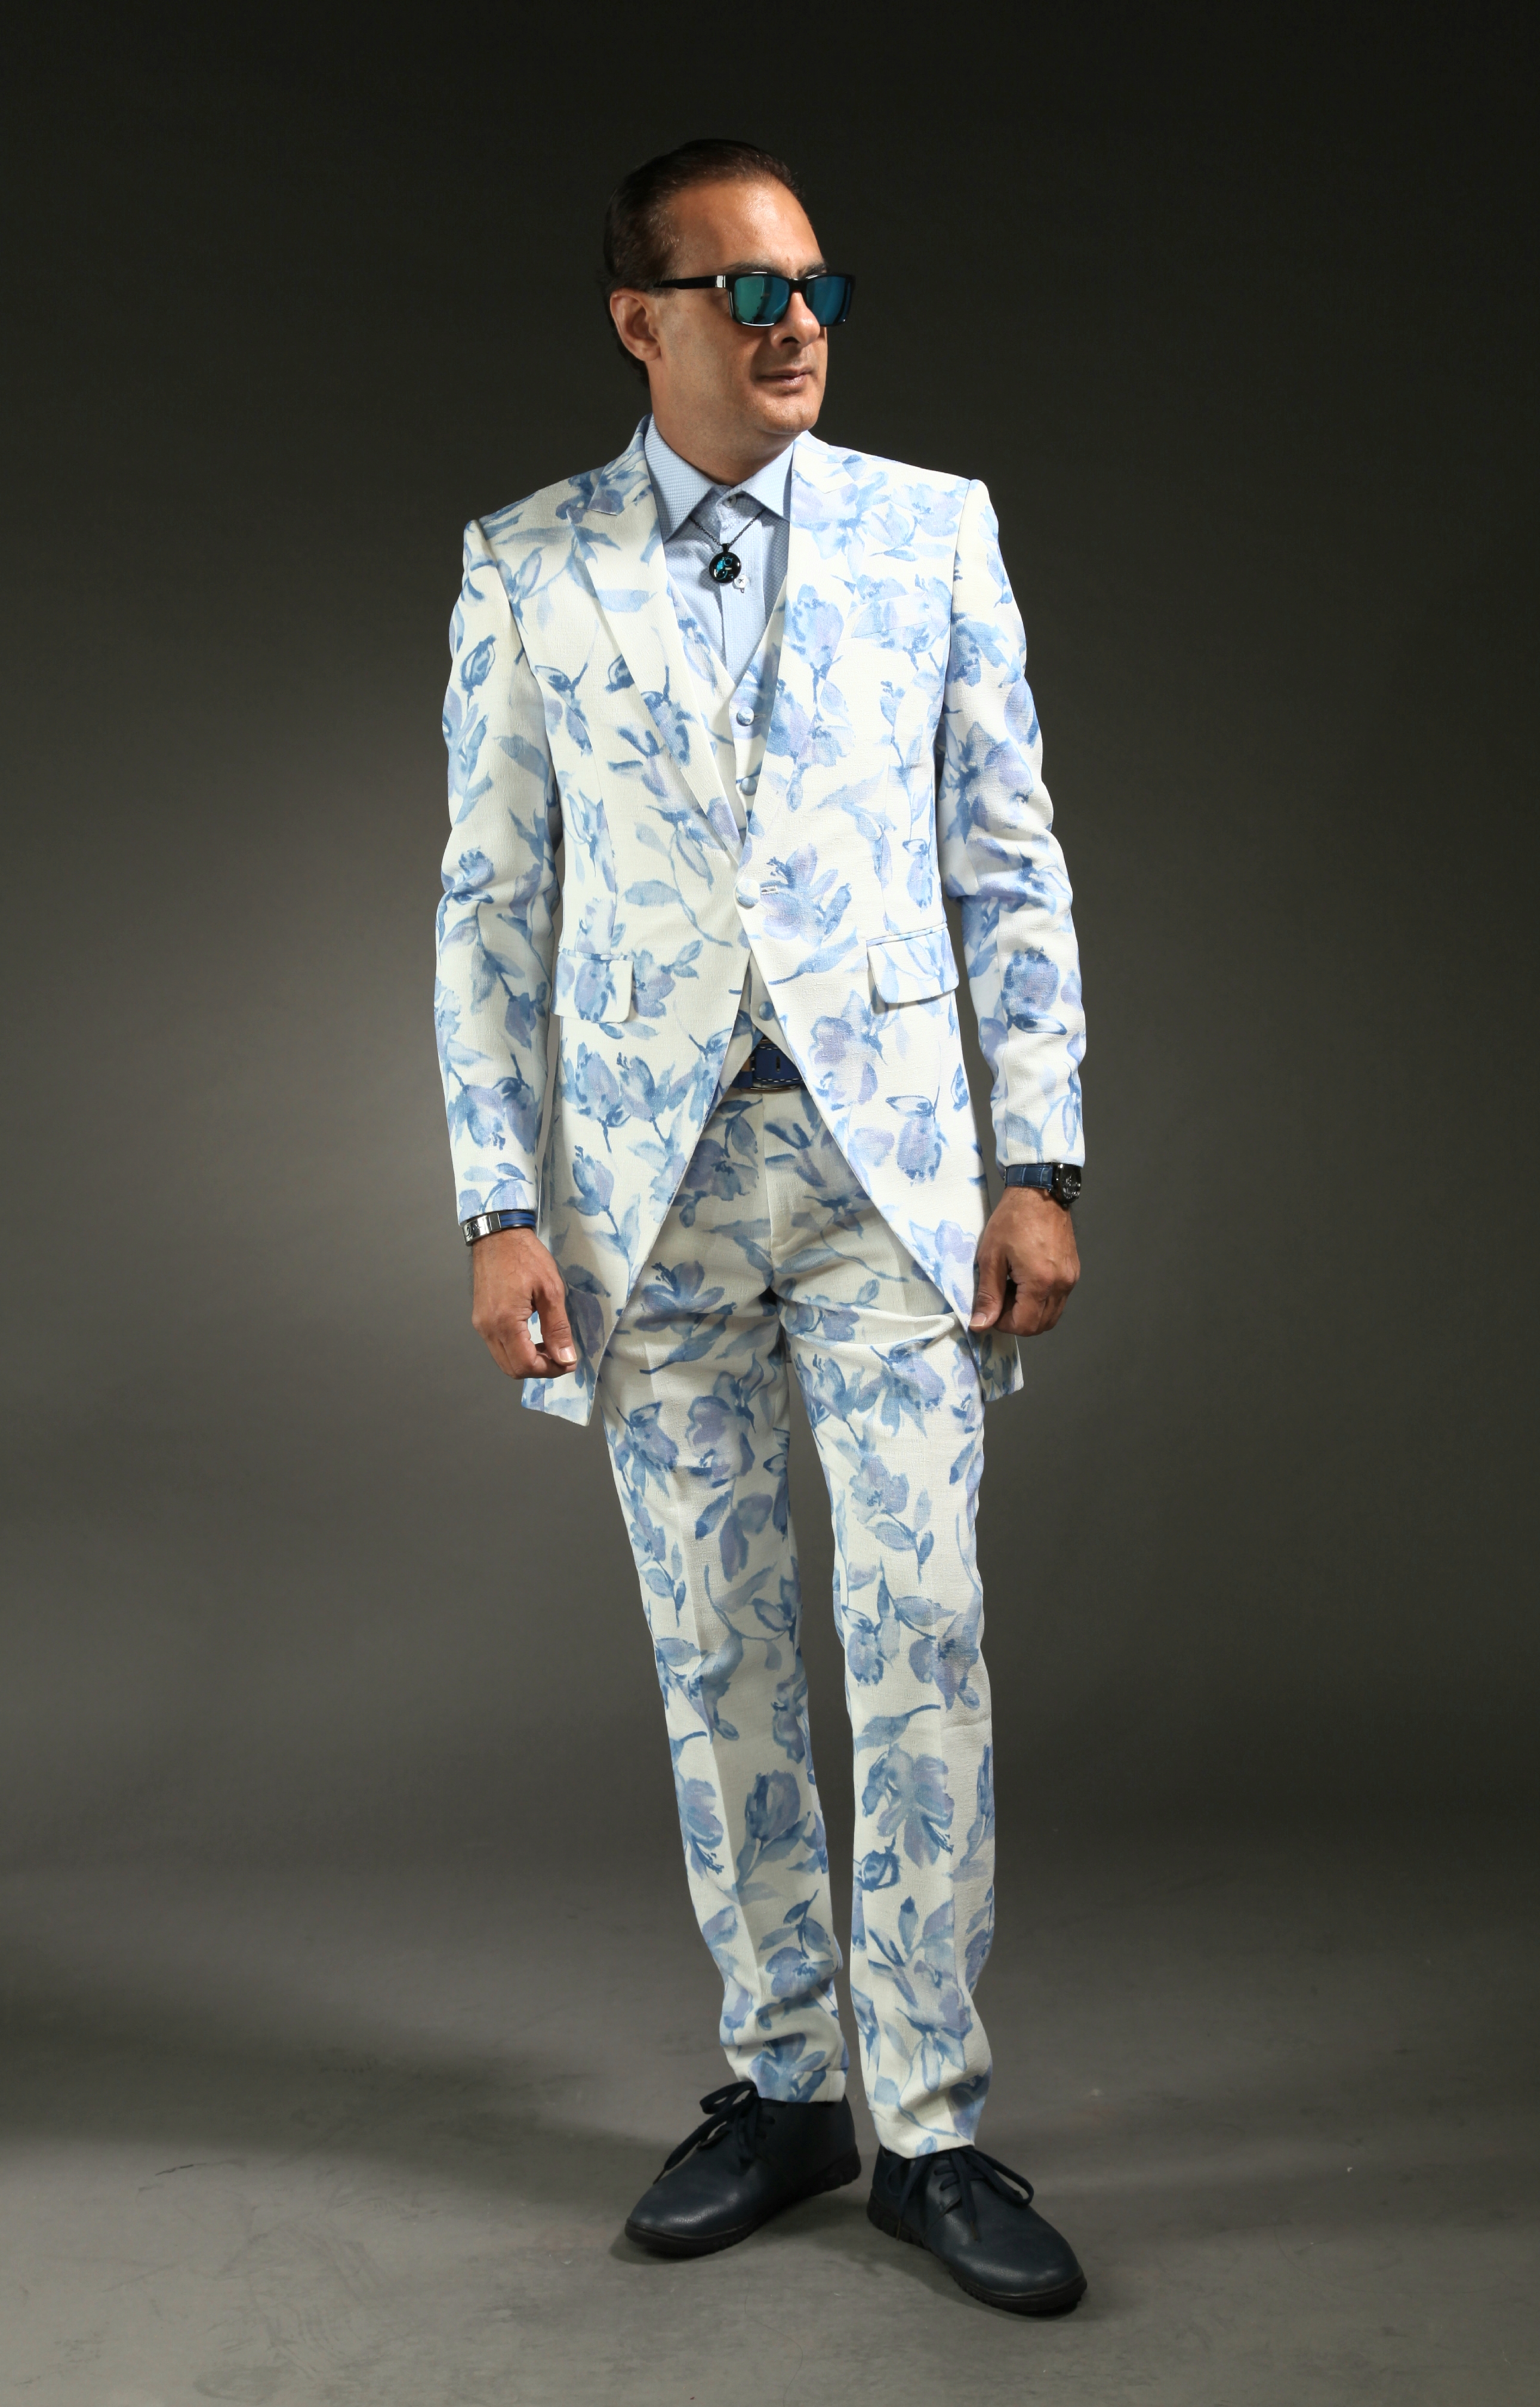 0462A-tailor_tailors_bespoke_tailoring_tuxedo_tux_wedding_black_tie_suit_suits_singapore_business